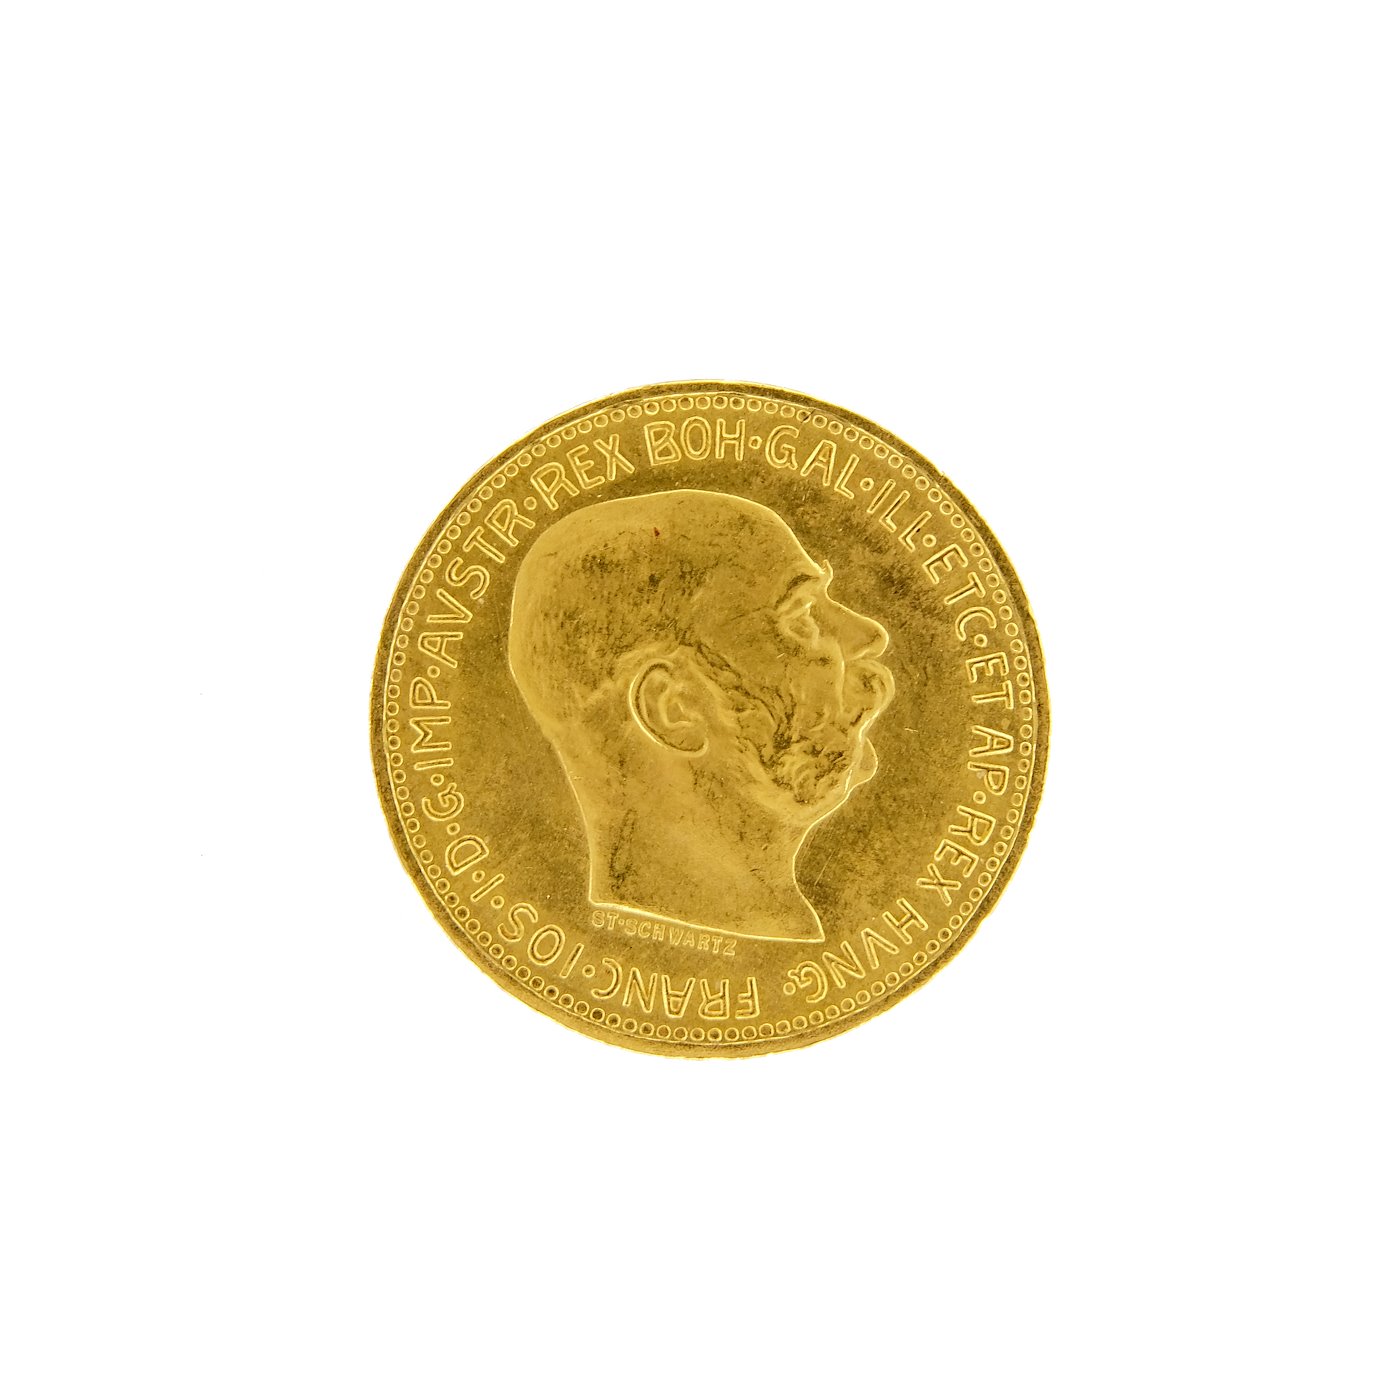 Mince - Rakousko Uhersko zlatá 20 Koruna 1915 rakouská. Zlato 900/1000, hrubá hmotnost mince 6,78 g